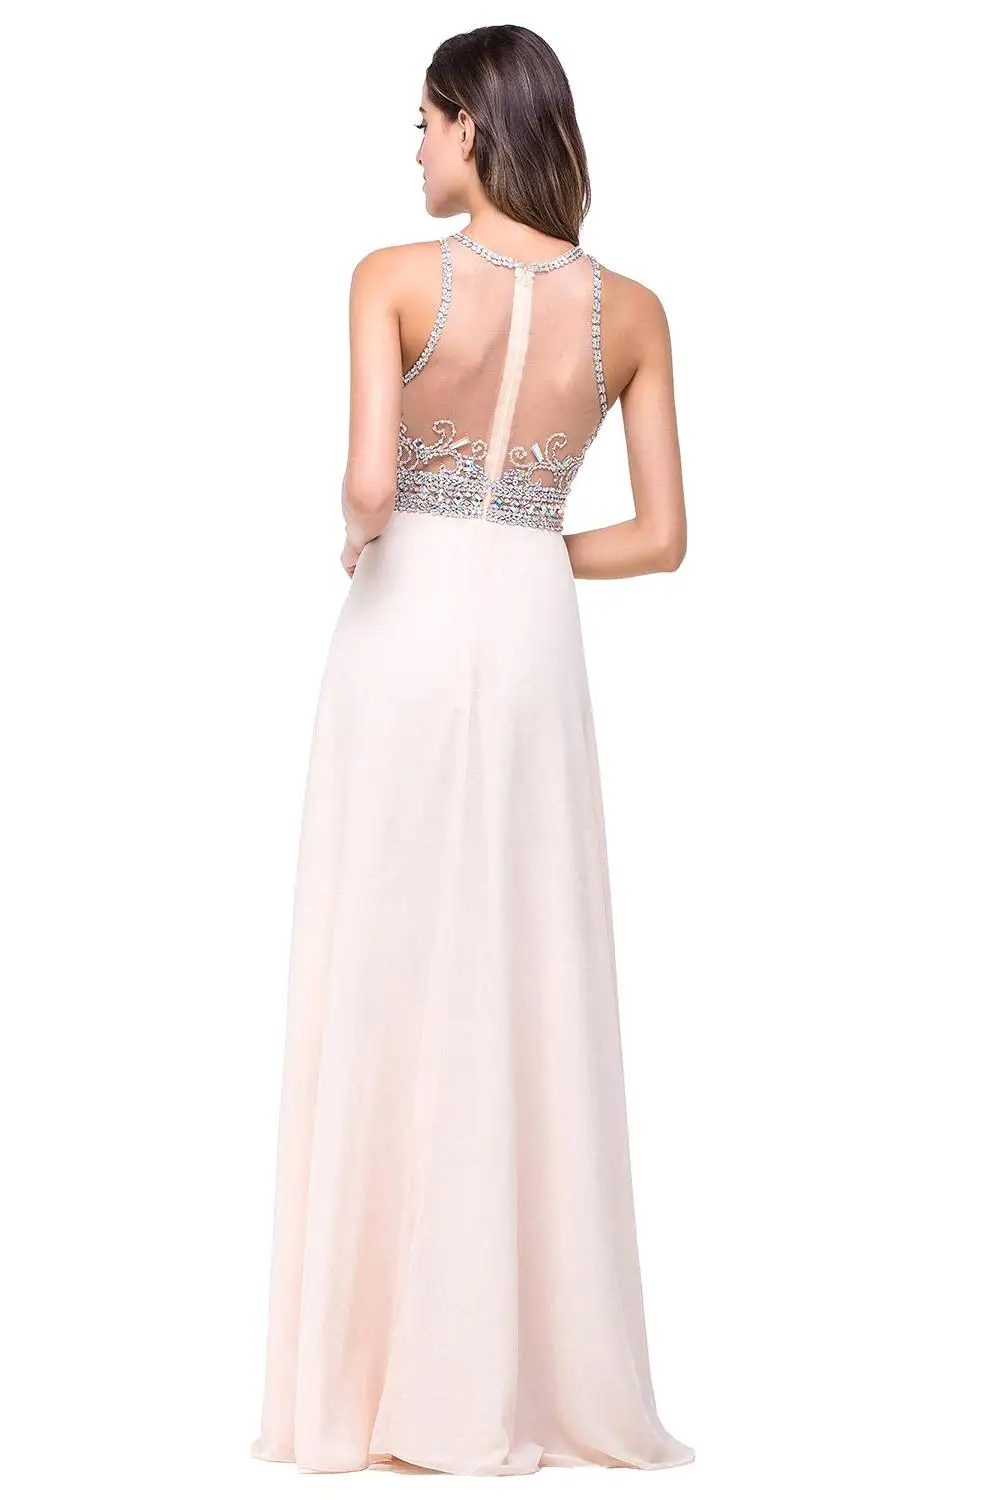 Vestido de festa longo de luxo, женское вечернее платье, шифоновое, с кристаллами, с бусинами, длинное, на выпускной